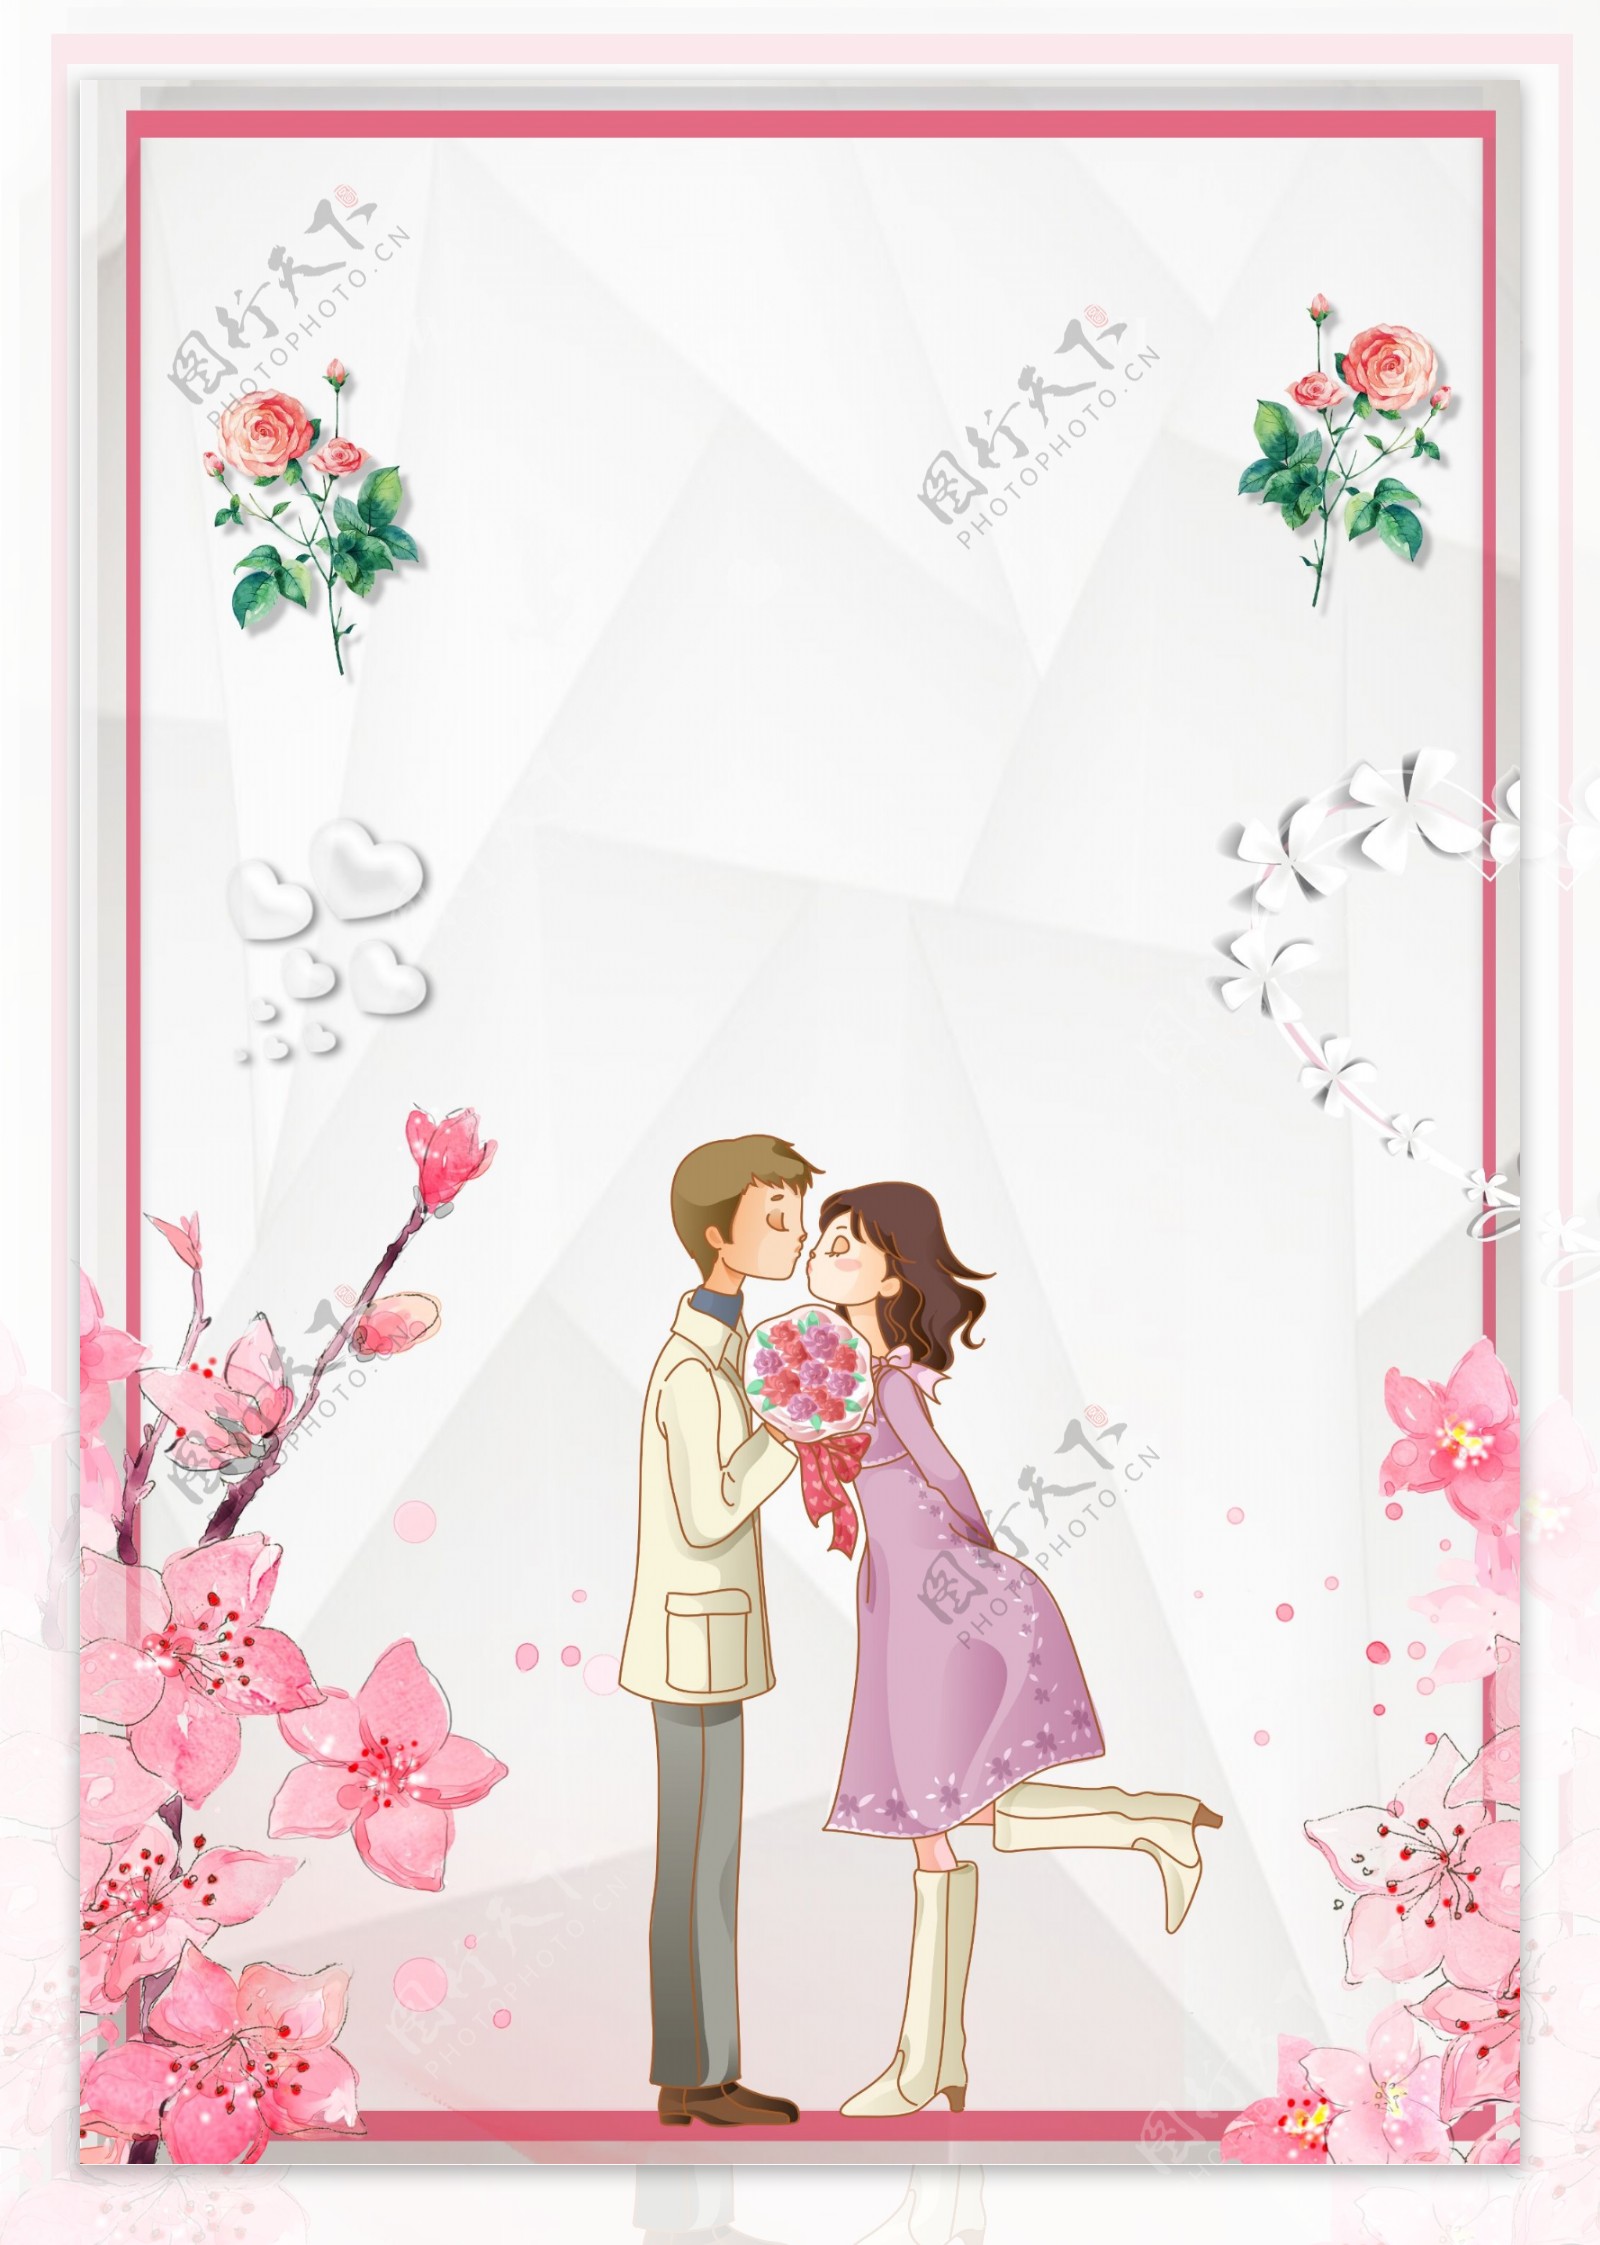 彩绘浪漫婚礼背景设计